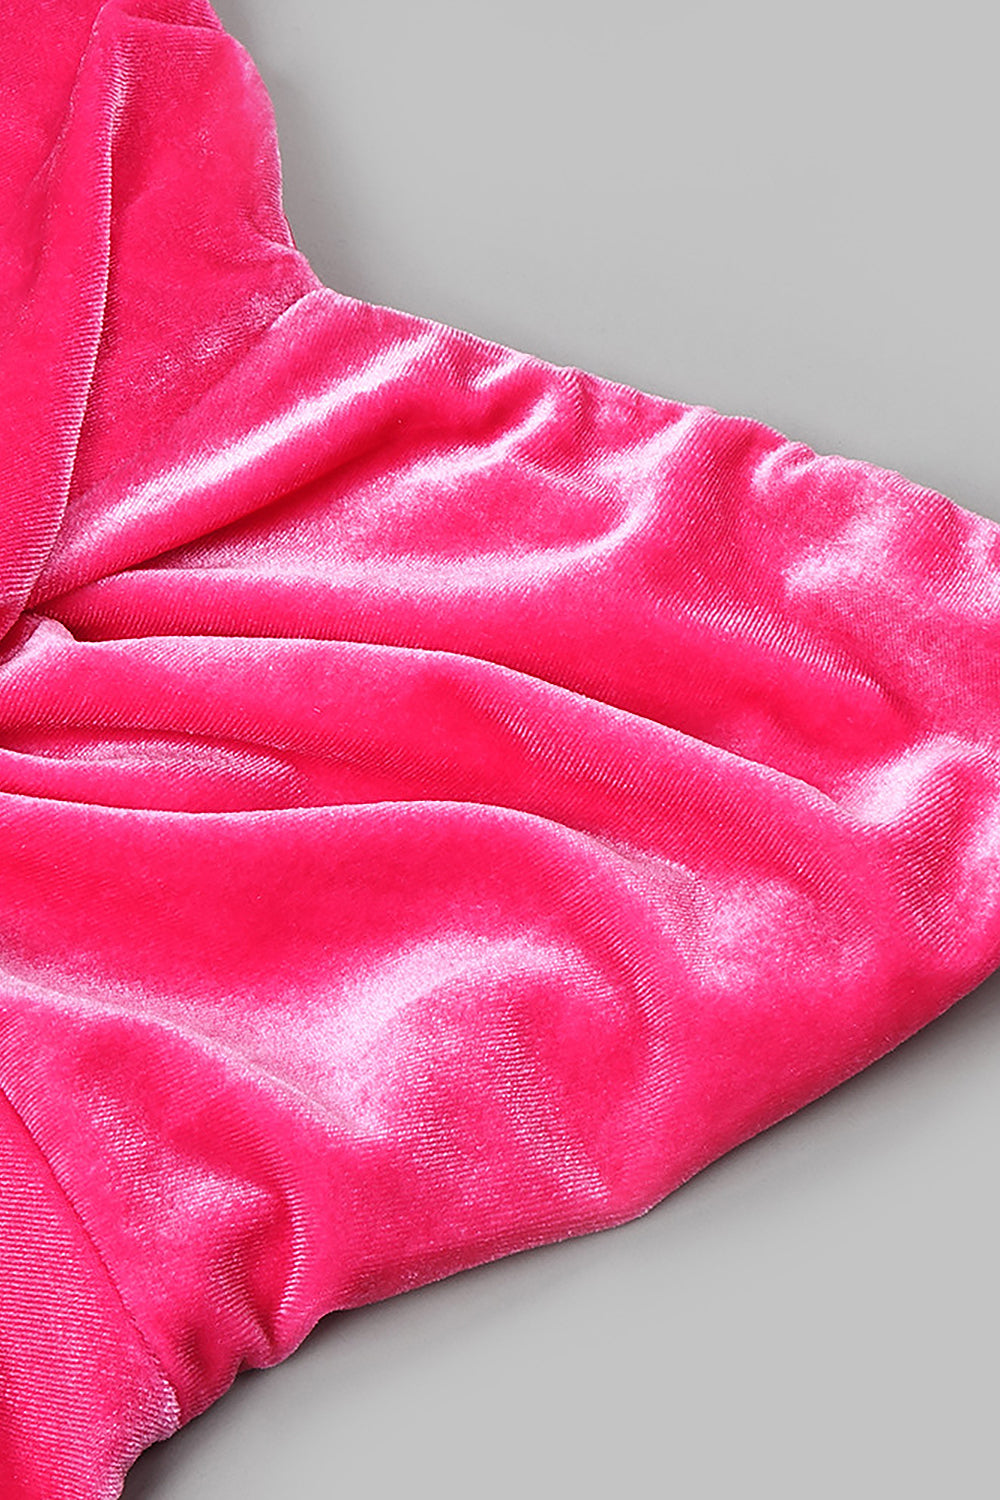 Robe longue sans bretelles en velours rose avec nœud croisé tendance